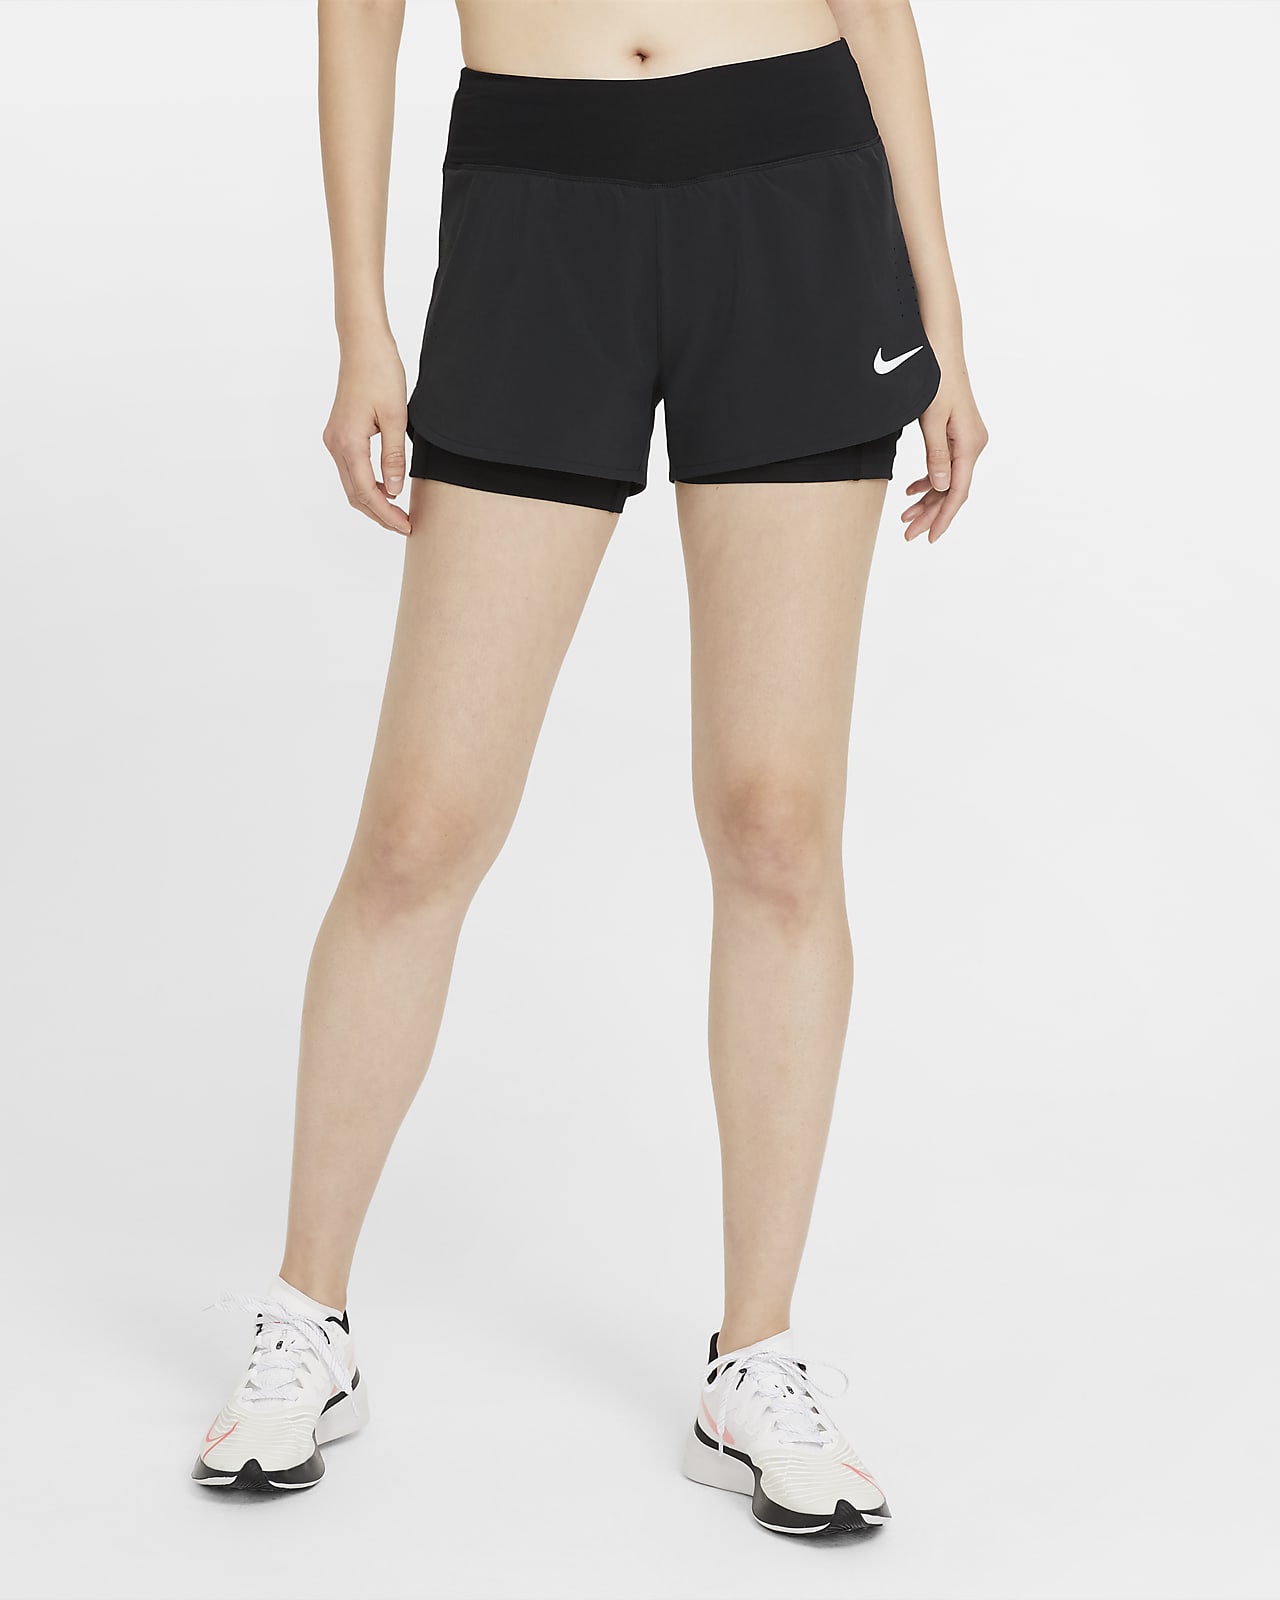 Calções de running 2 em 1 Nike Eclipse para mulher